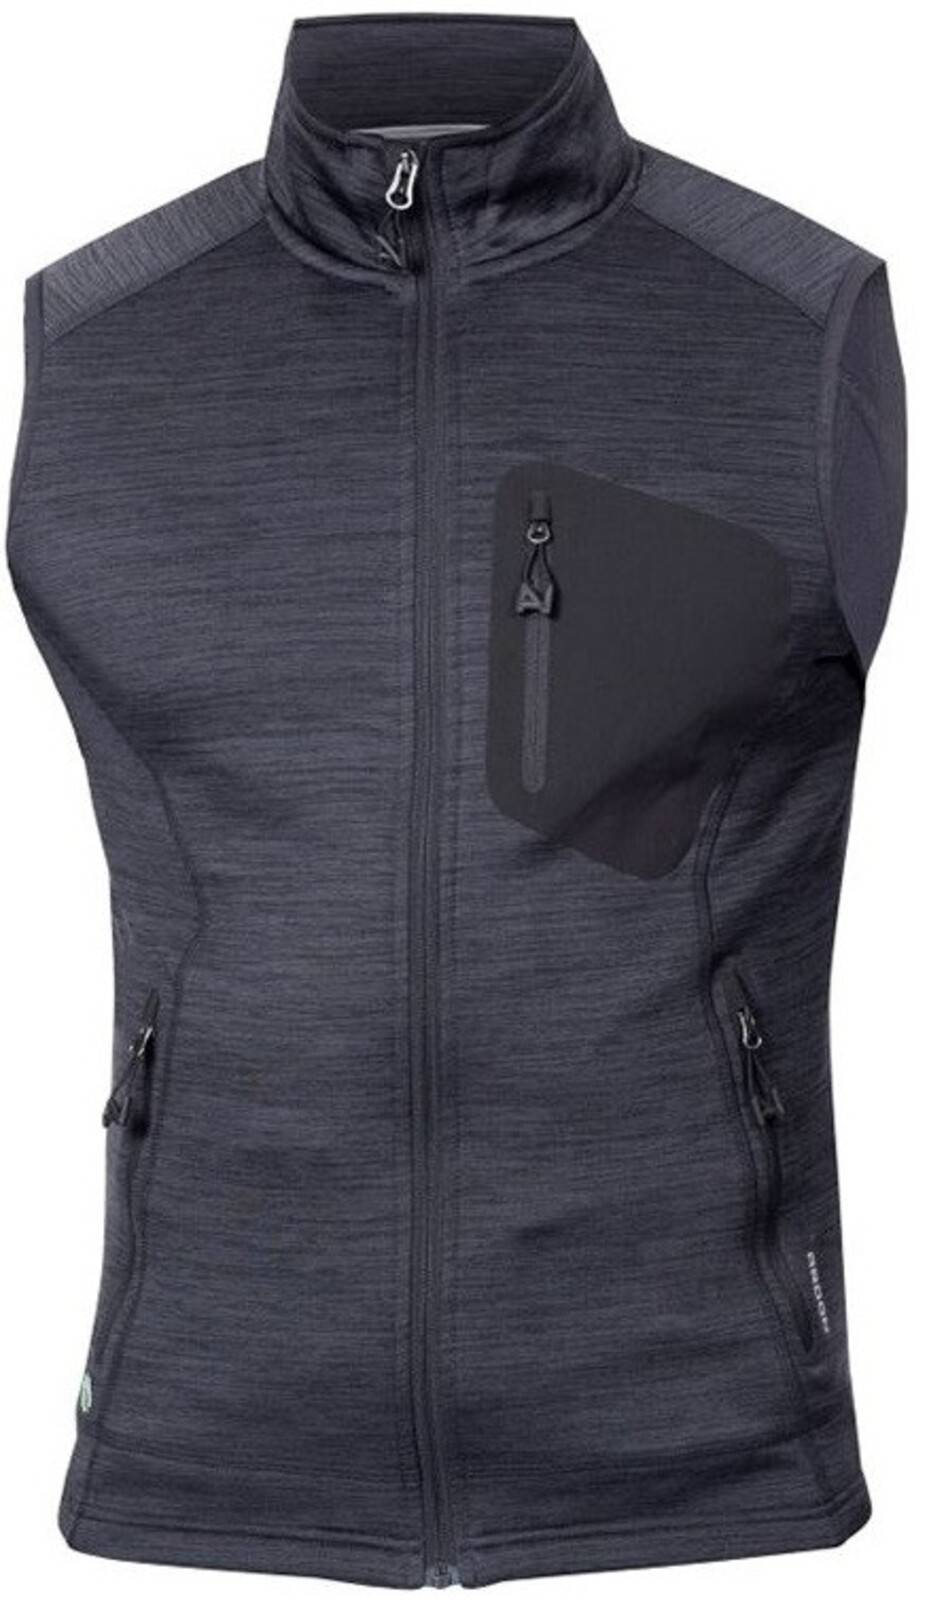 Pánska funkčná vesta Ardon Breeffidry - veľkosť: S, farba: sivá